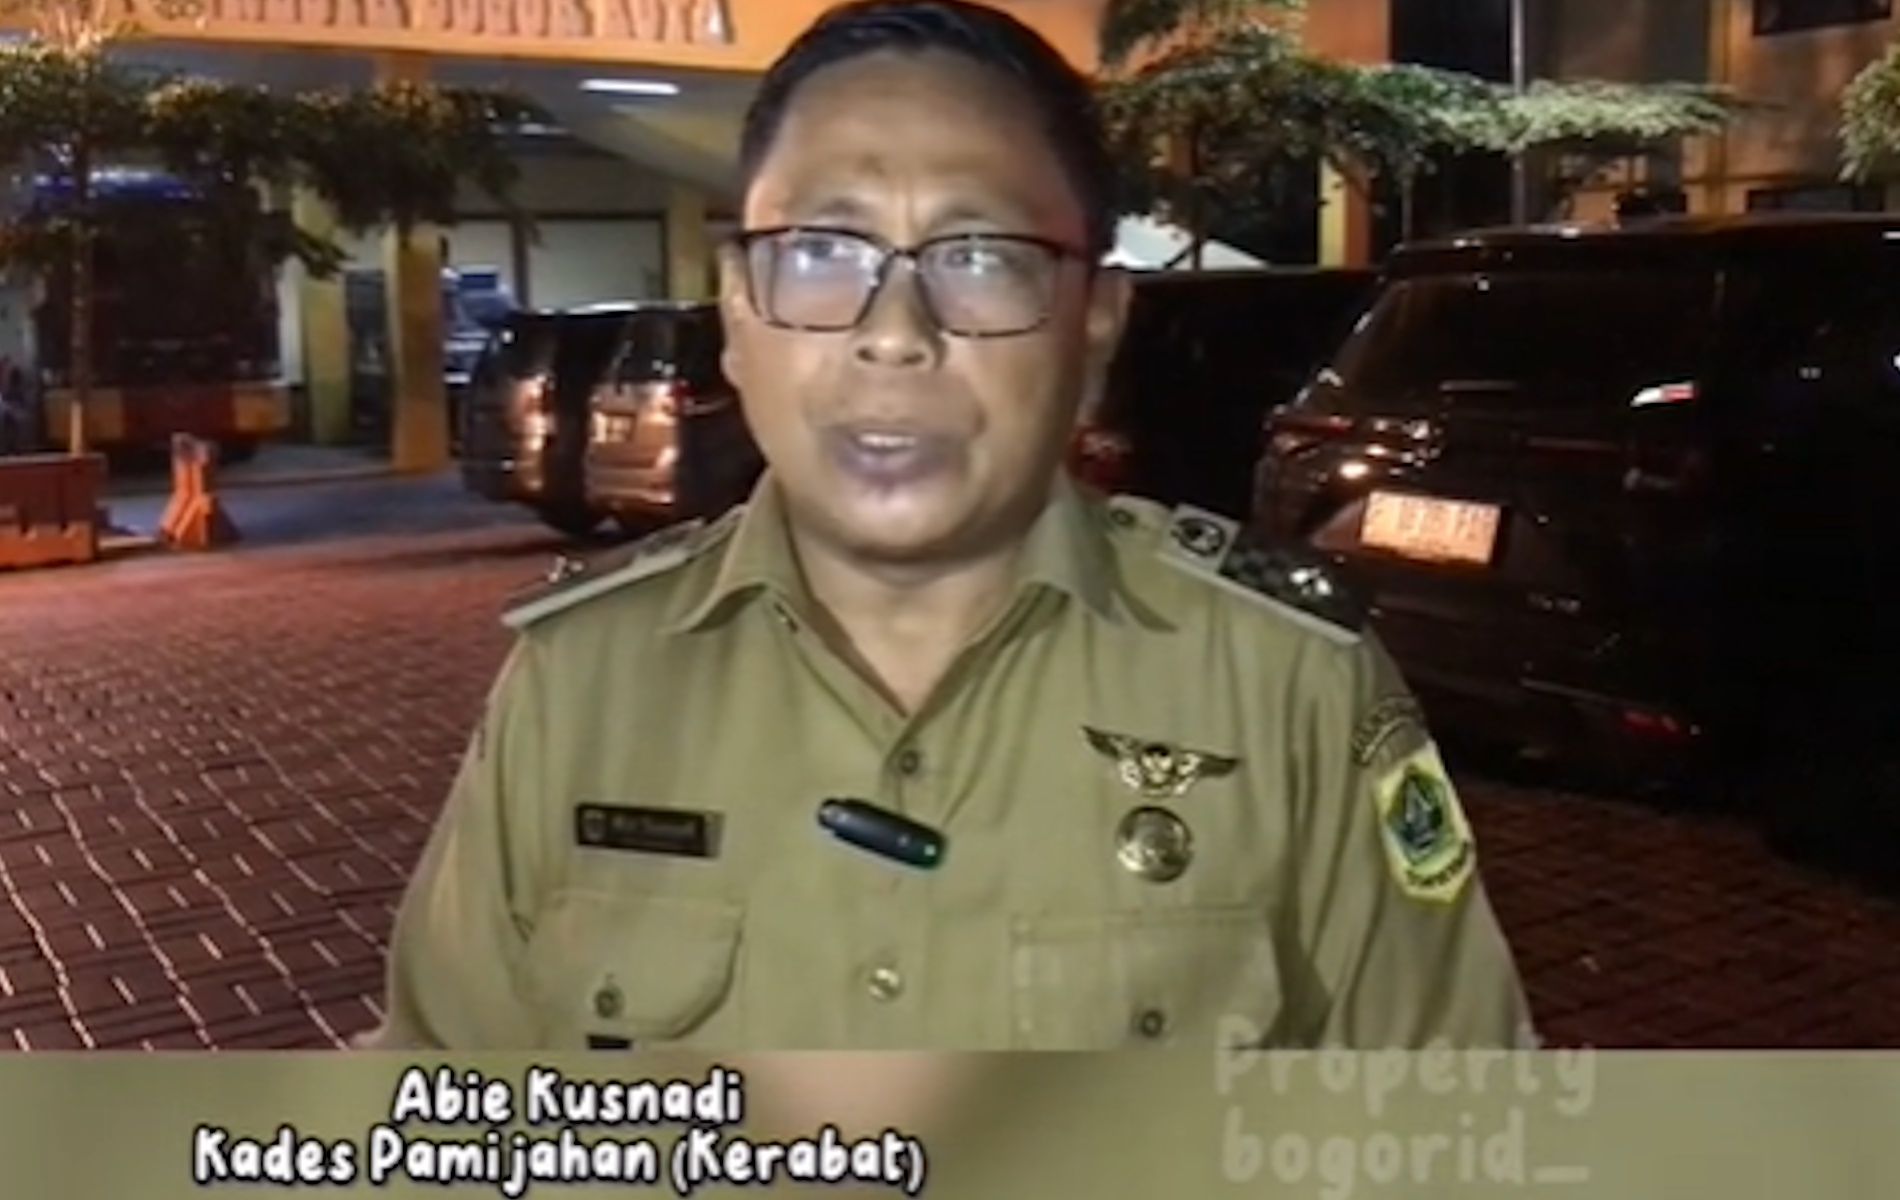 Kades Pamijahan Abhie Kusnadi menuturkan, Nindi sempat dilaporkan hilang ke pihak Polsek Cibungbulang sebelum ditemukan tewas di apartemen Bogor Icon.